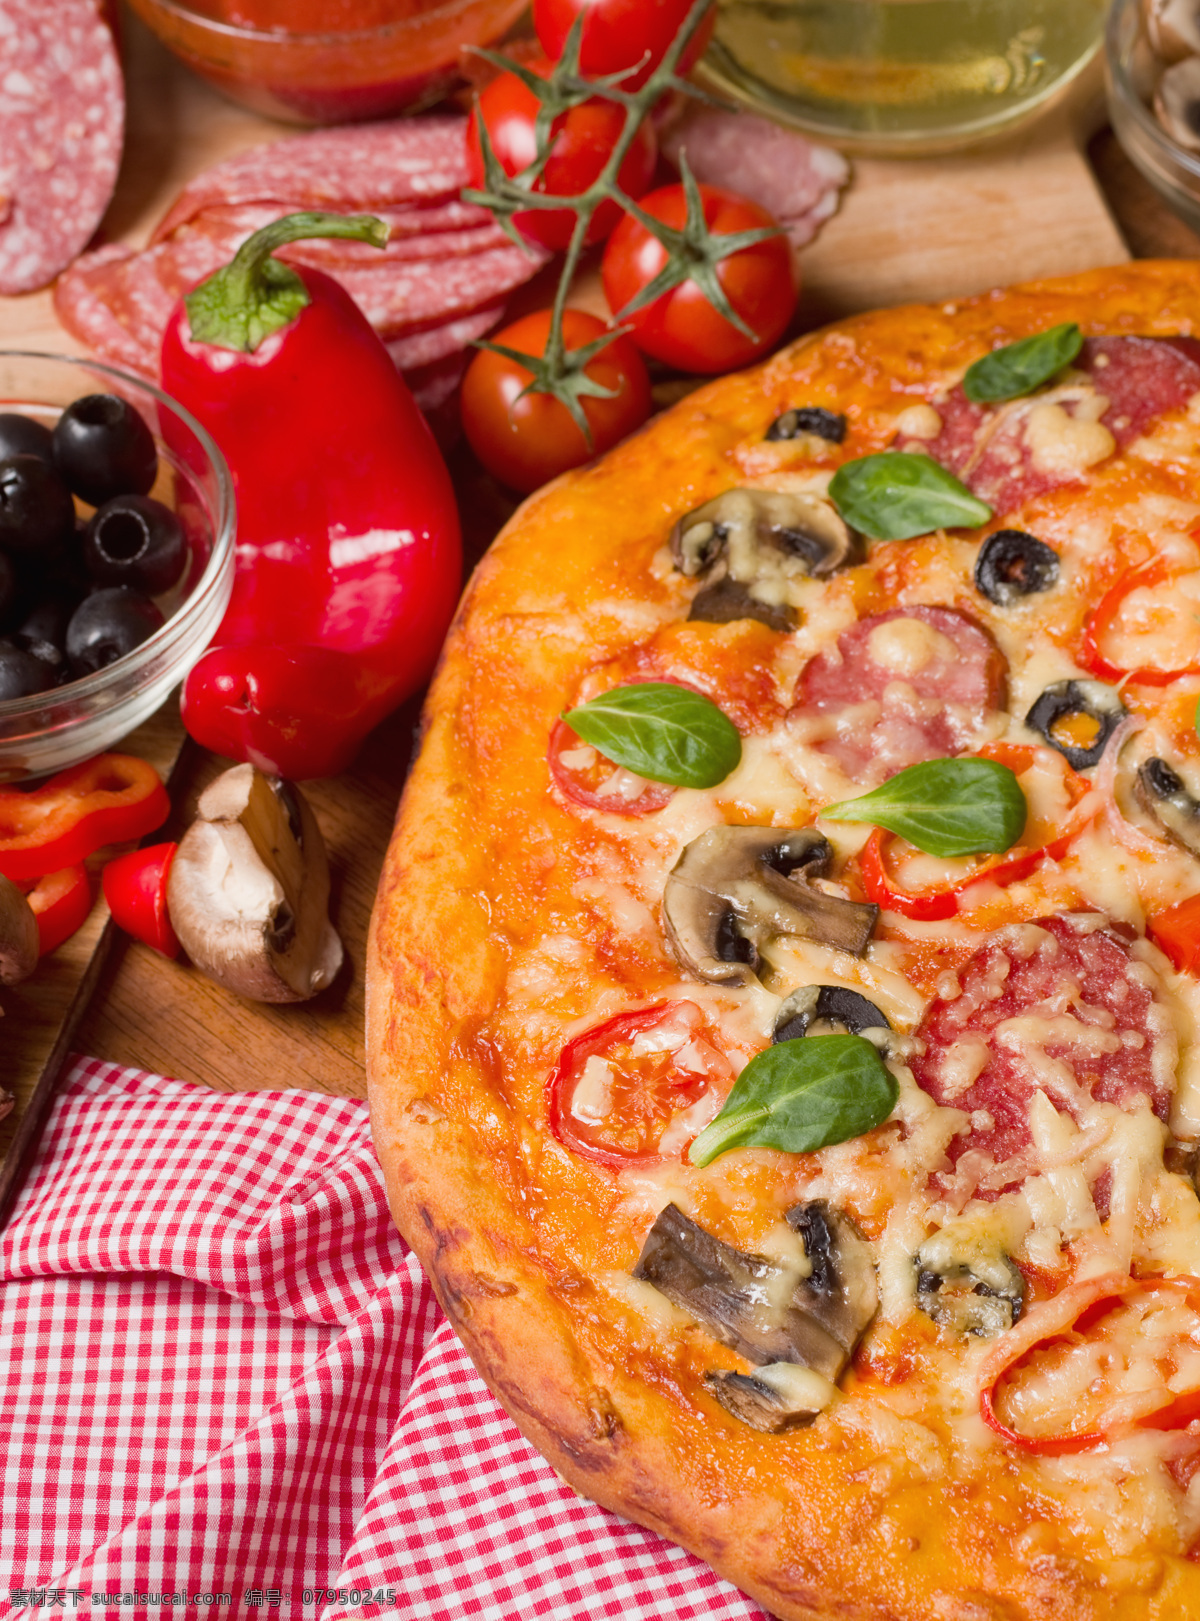 比萨 pizza 海鲜披萨 水果披萨 蔬菜披萨 榴莲披萨 美食 美味 牛肉披萨 西餐 餐饮美食 西餐美食